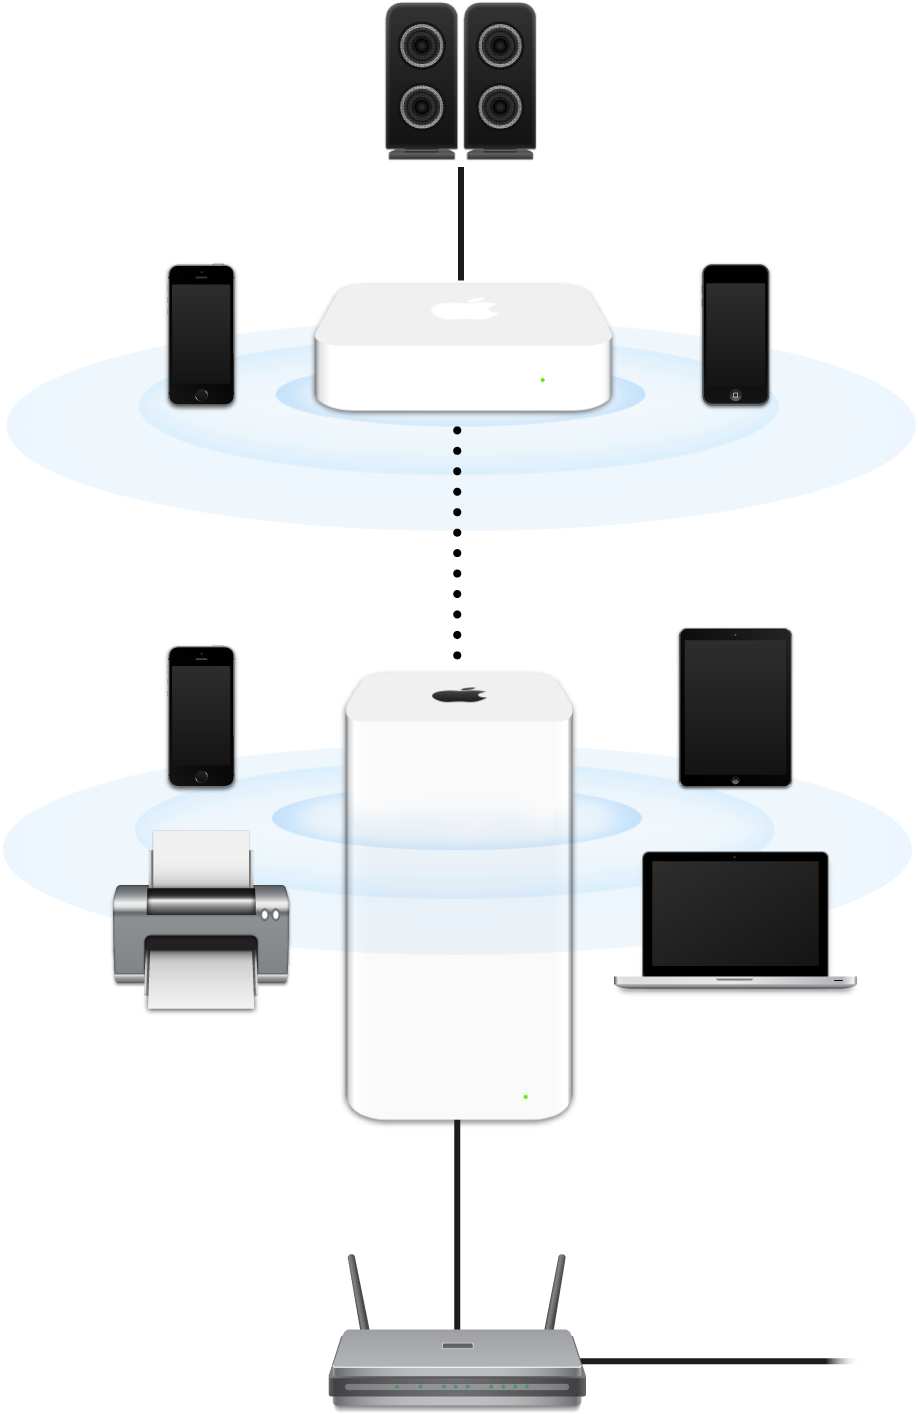 AirMac Extreme と AirMac Express を含む拡張ネットワーク。モデムに接続され、さまざまなデバイスにデータを送信しています。